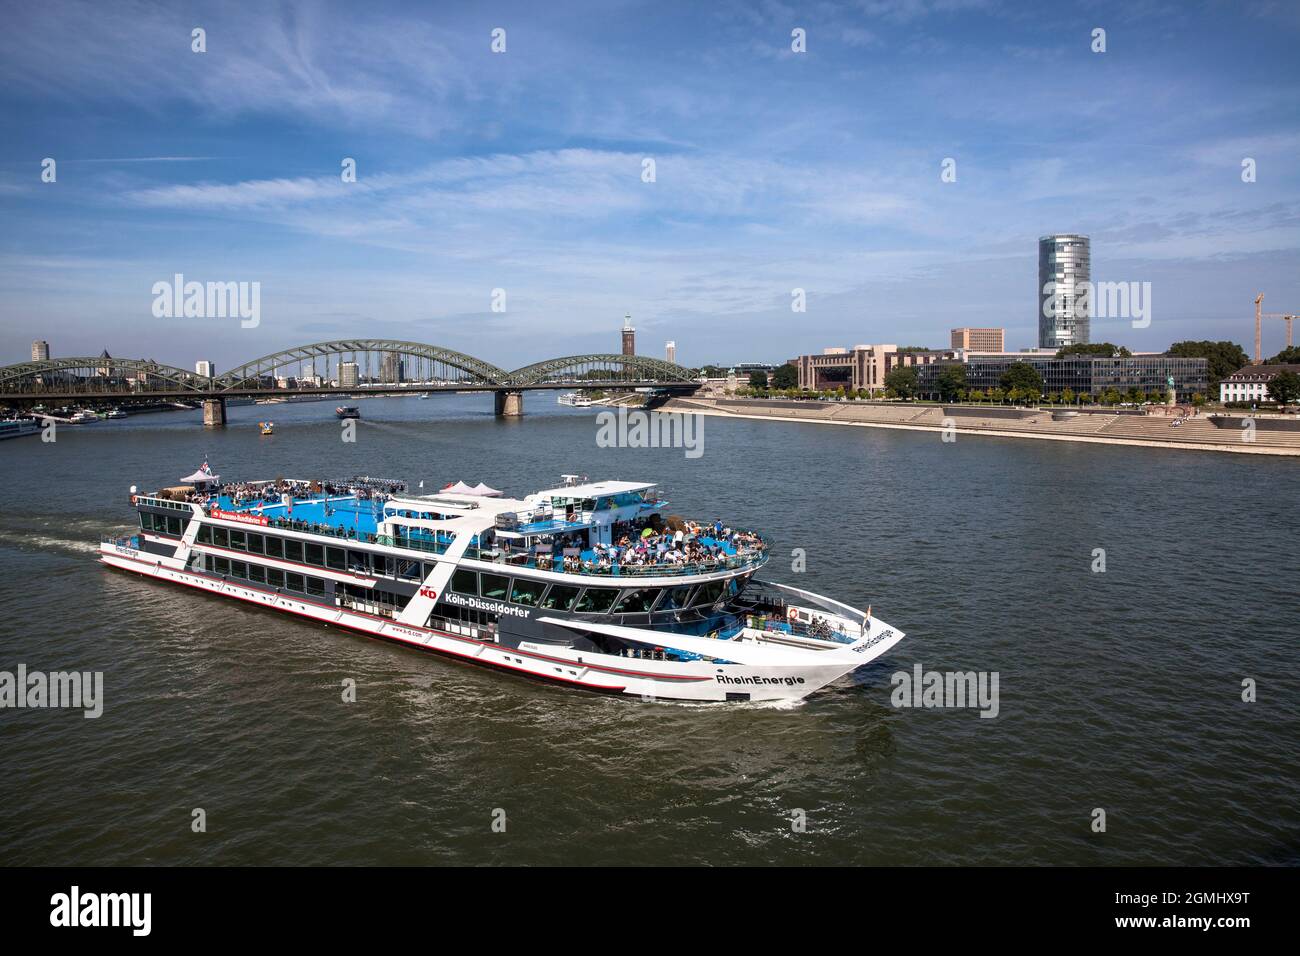 katamaran RheinEnergie, Ausflugsschiff der Reederei Köln-Düsseldorfer Deutsche Rheinschiffahrt AG, Hohenzollernbrücke, KölnTriangl Stockfoto